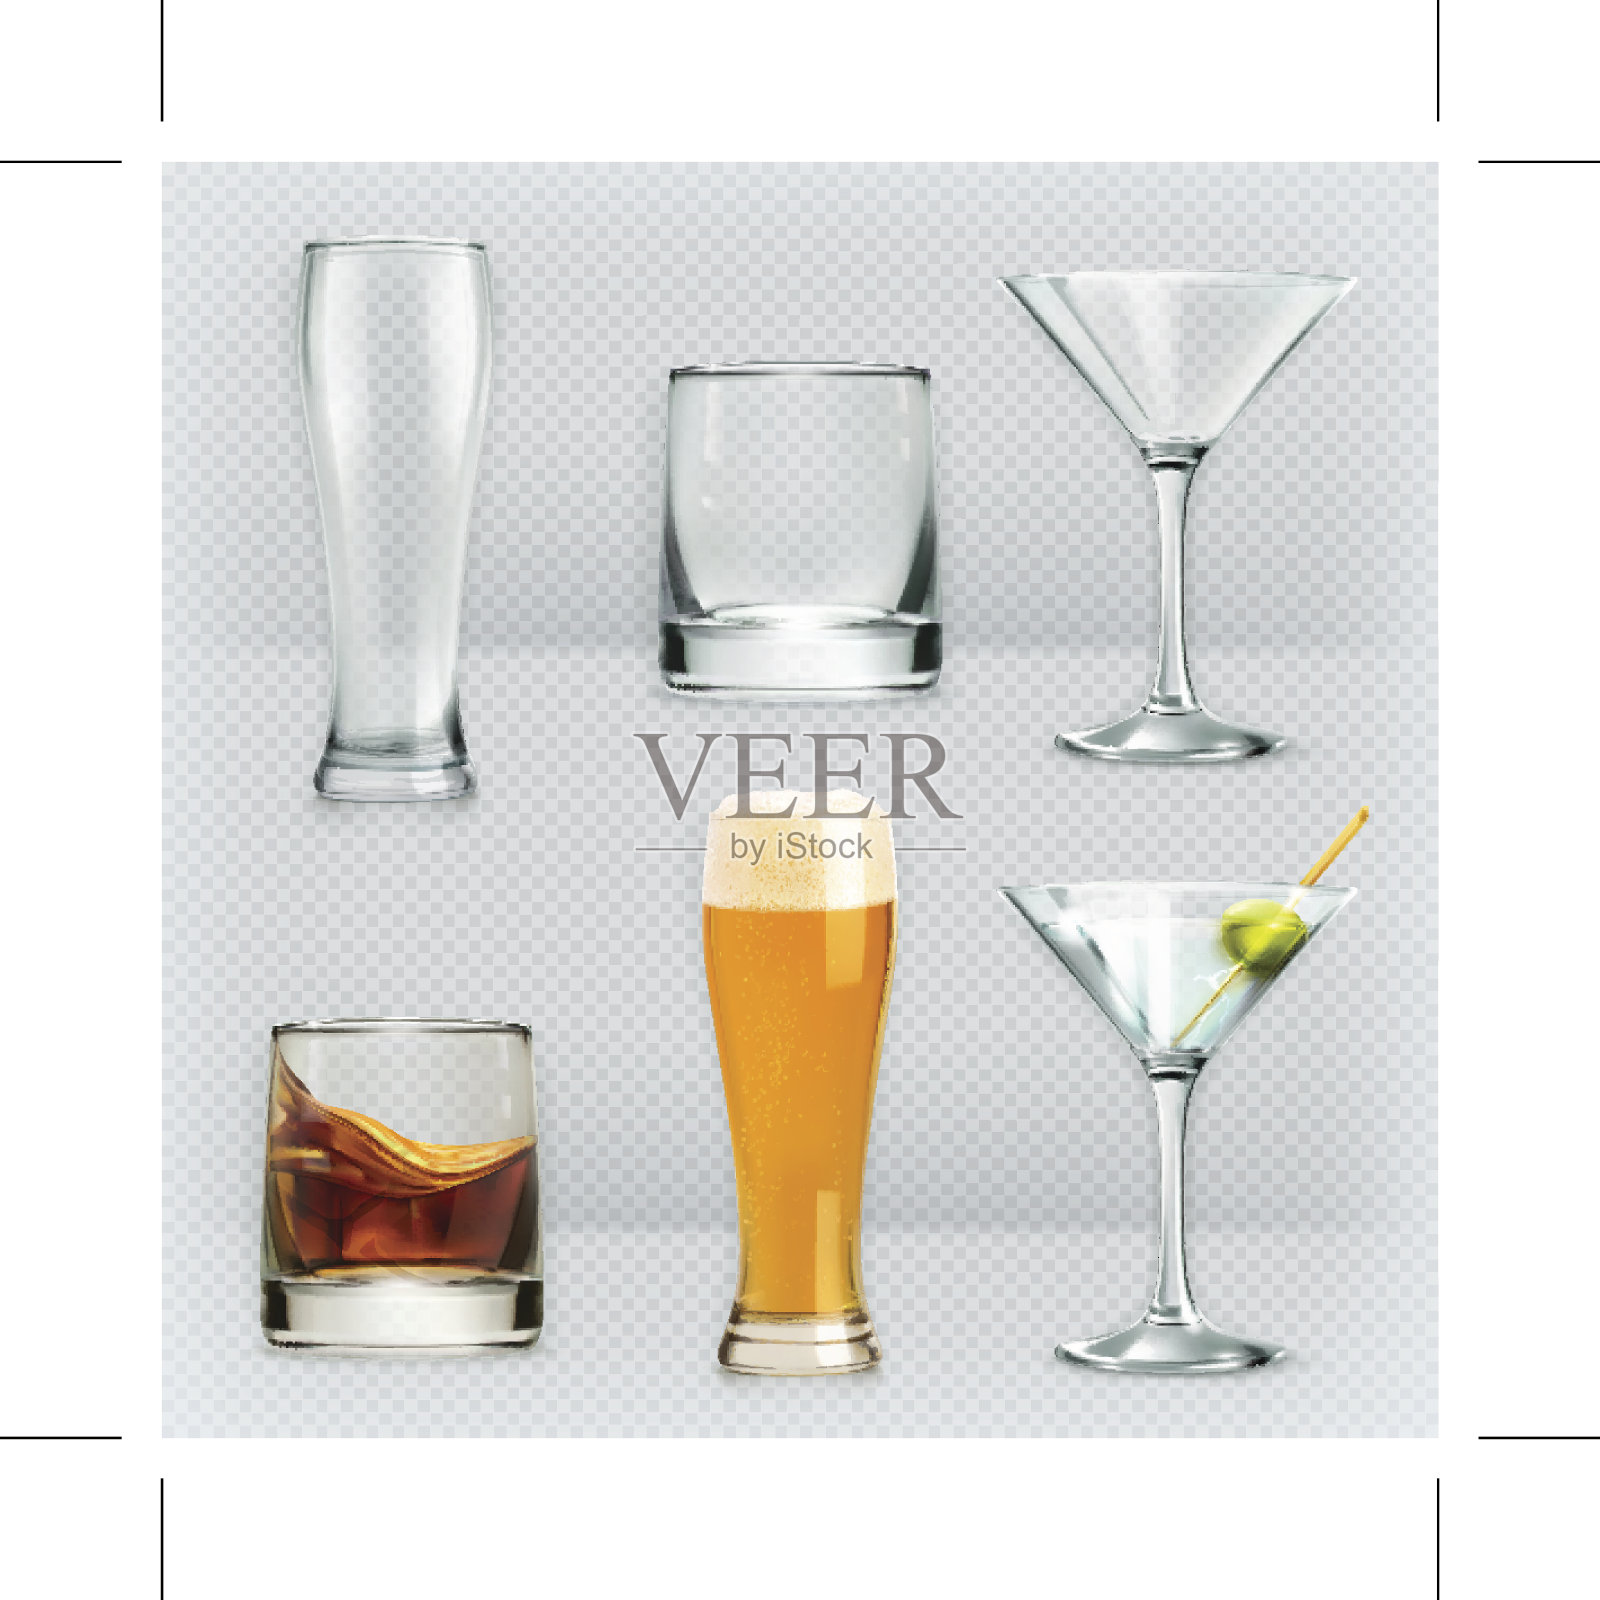 酒精饮料用的玻璃杯设计元素图片